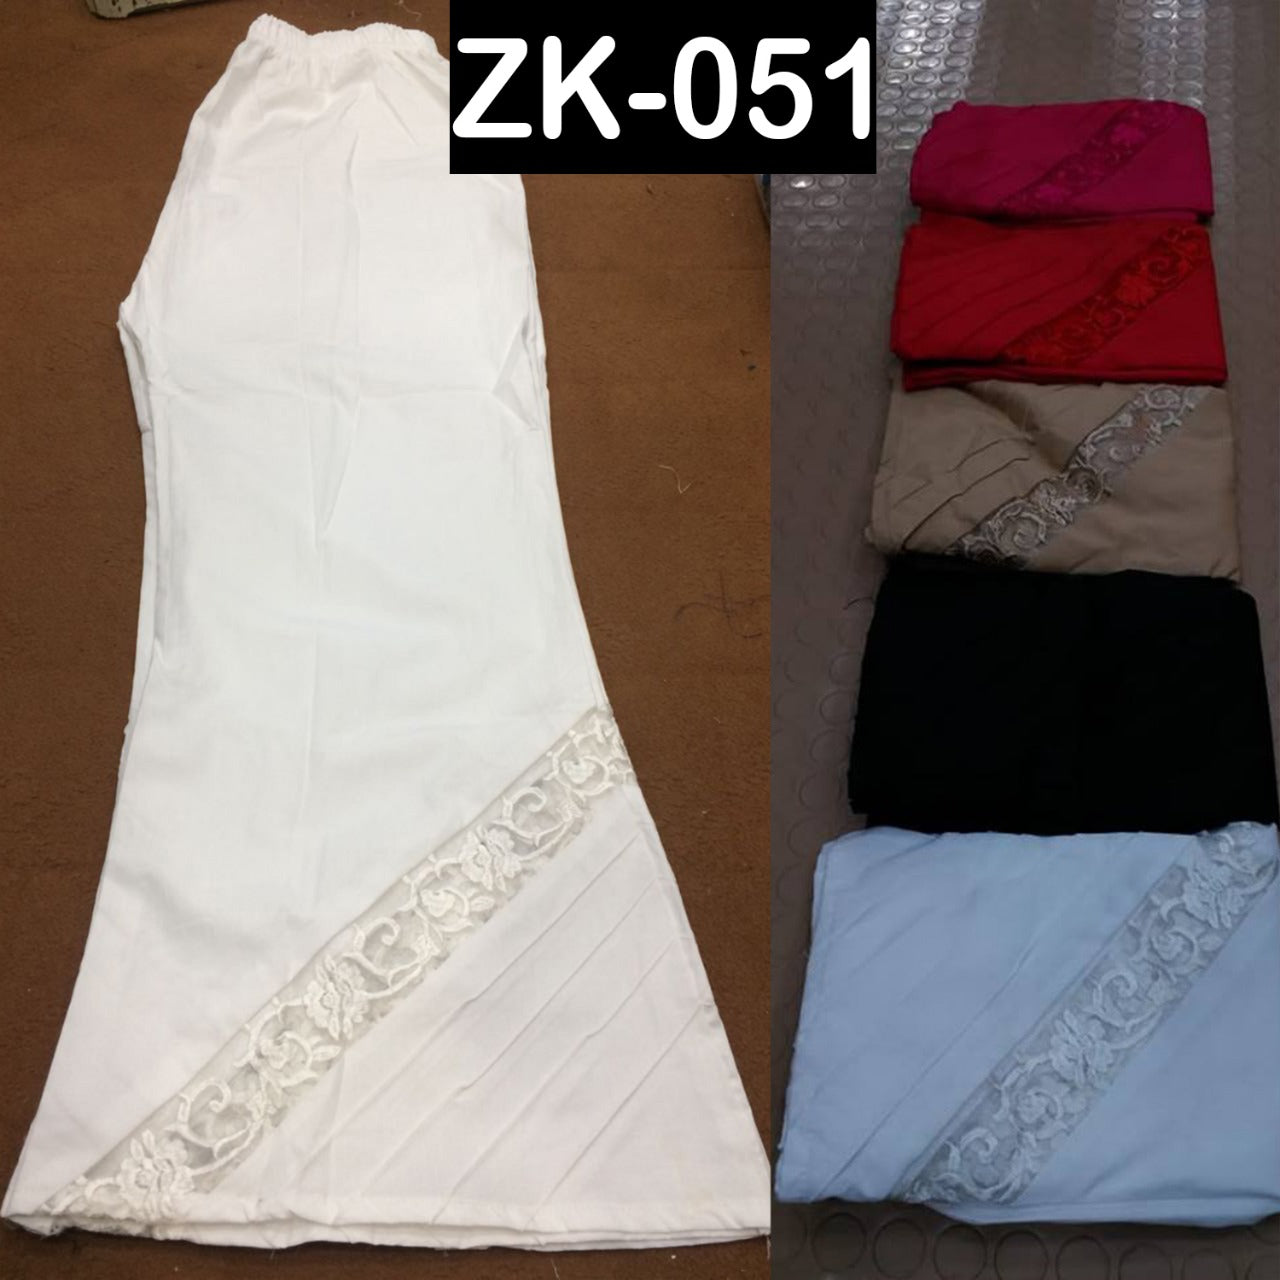 Stylish cotton trouser for women. (ZK-051) RGshop